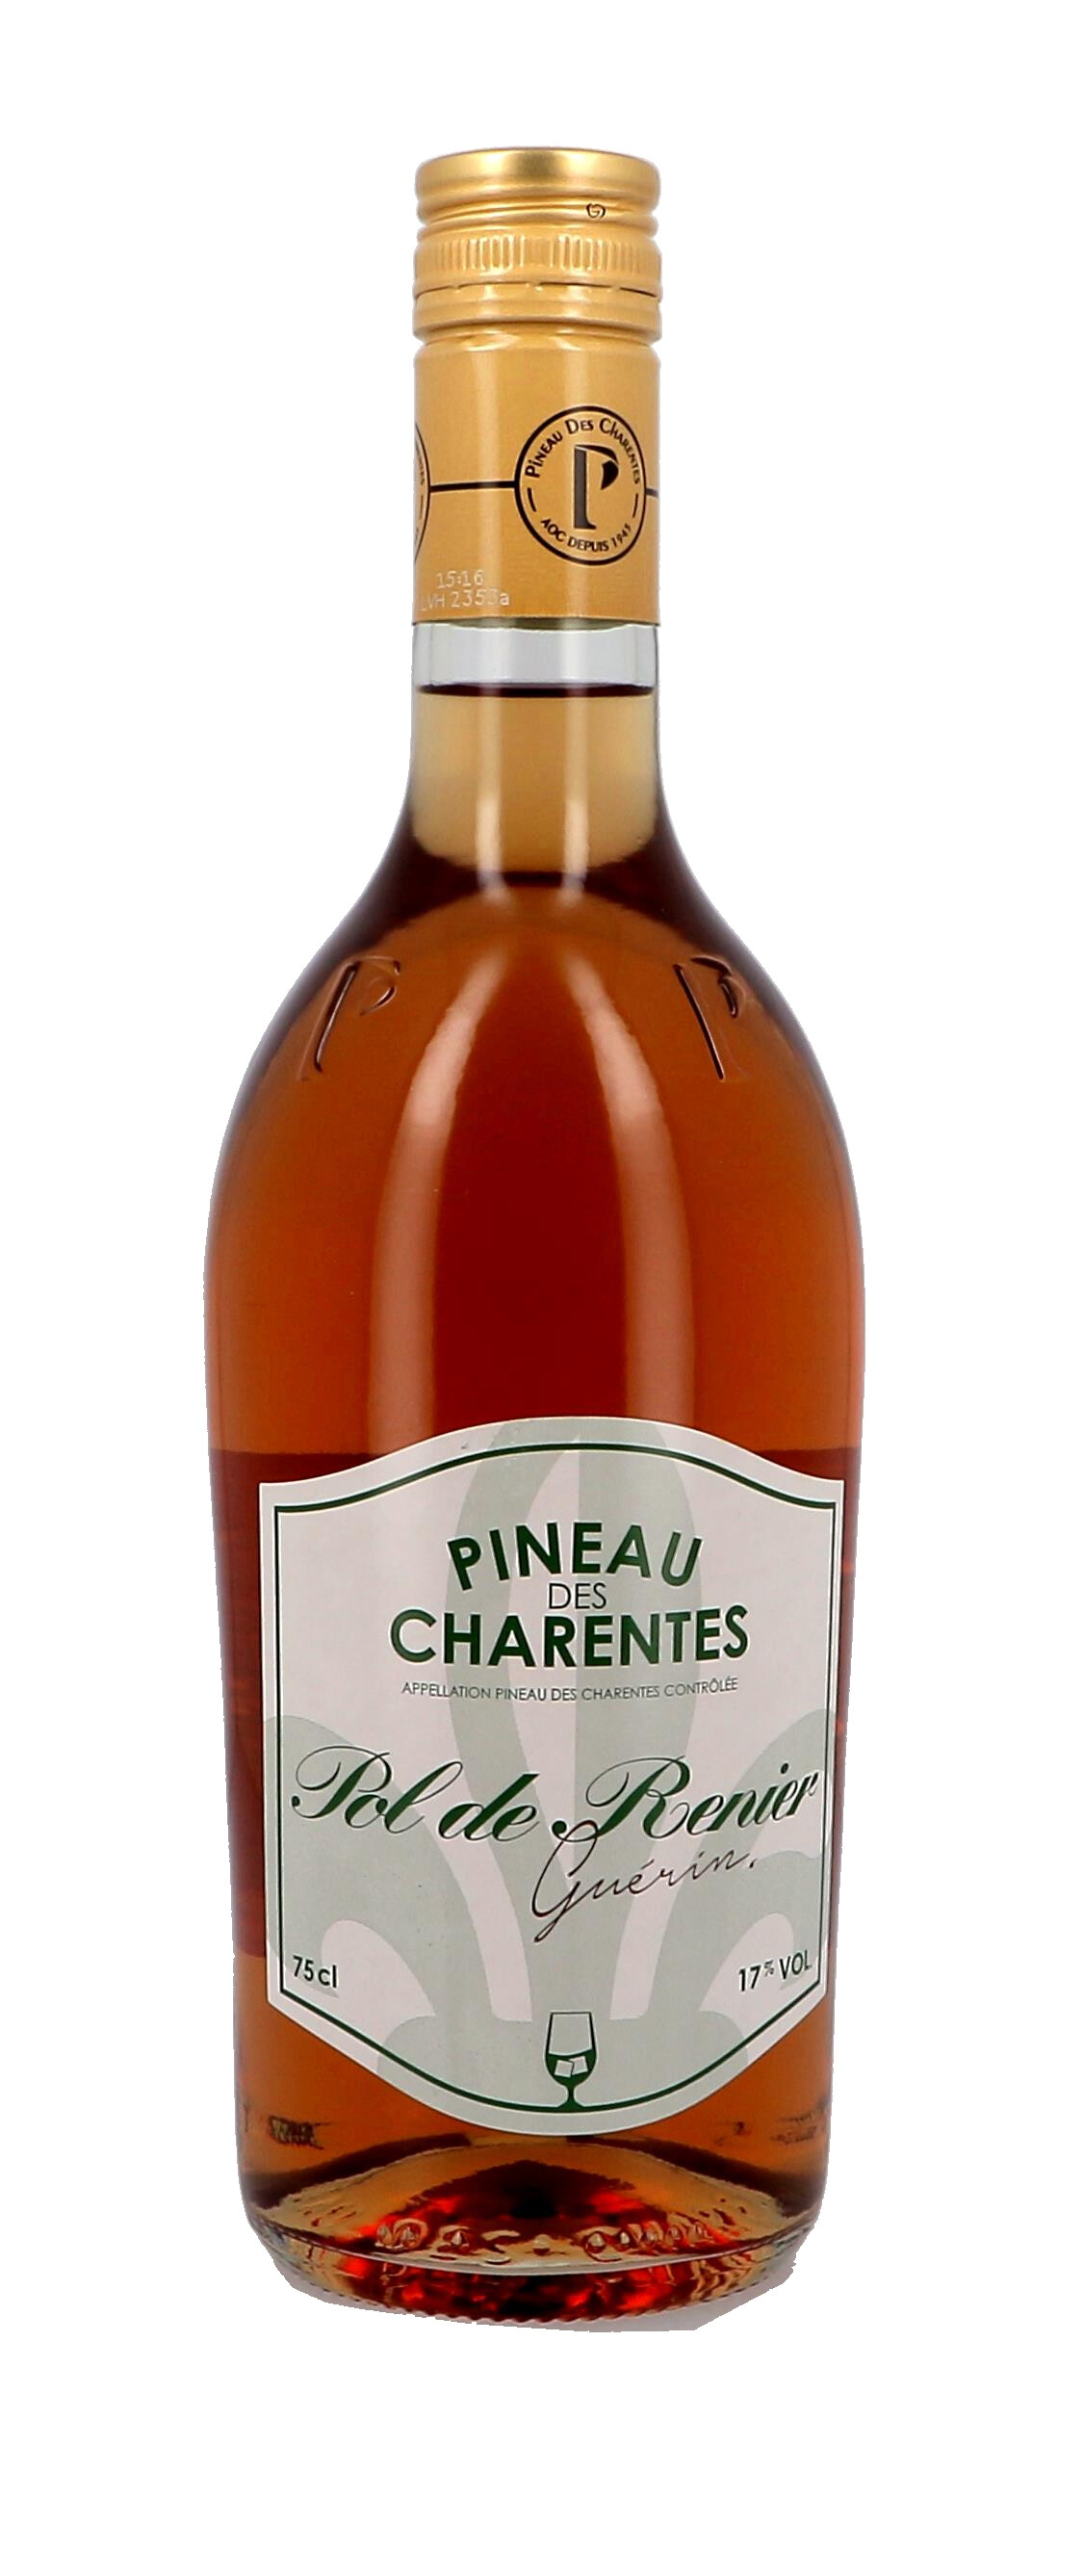 Pineau des Charentes Pol Renier wit 75cl 17% (Pineau de charentes)